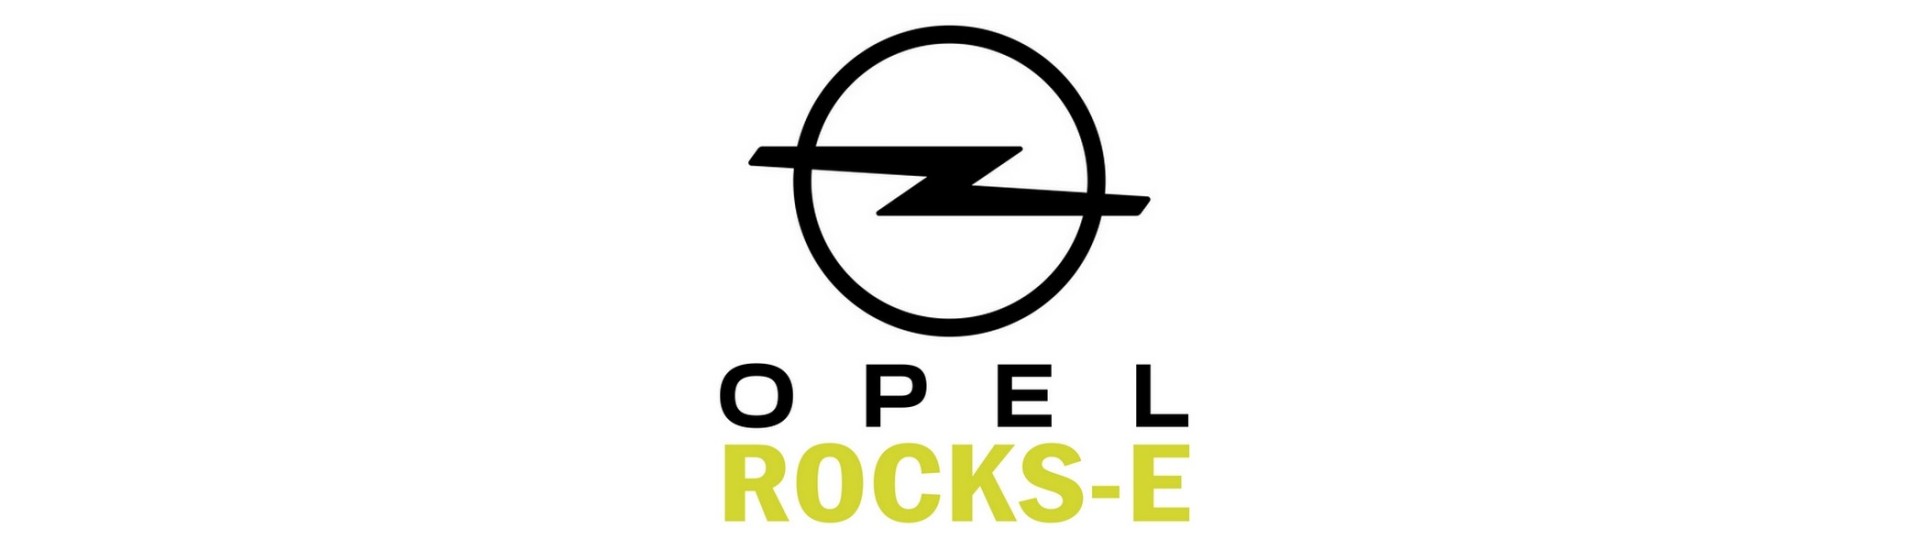 Berceau moteur pour voiture sans permis Opel Rocks-E